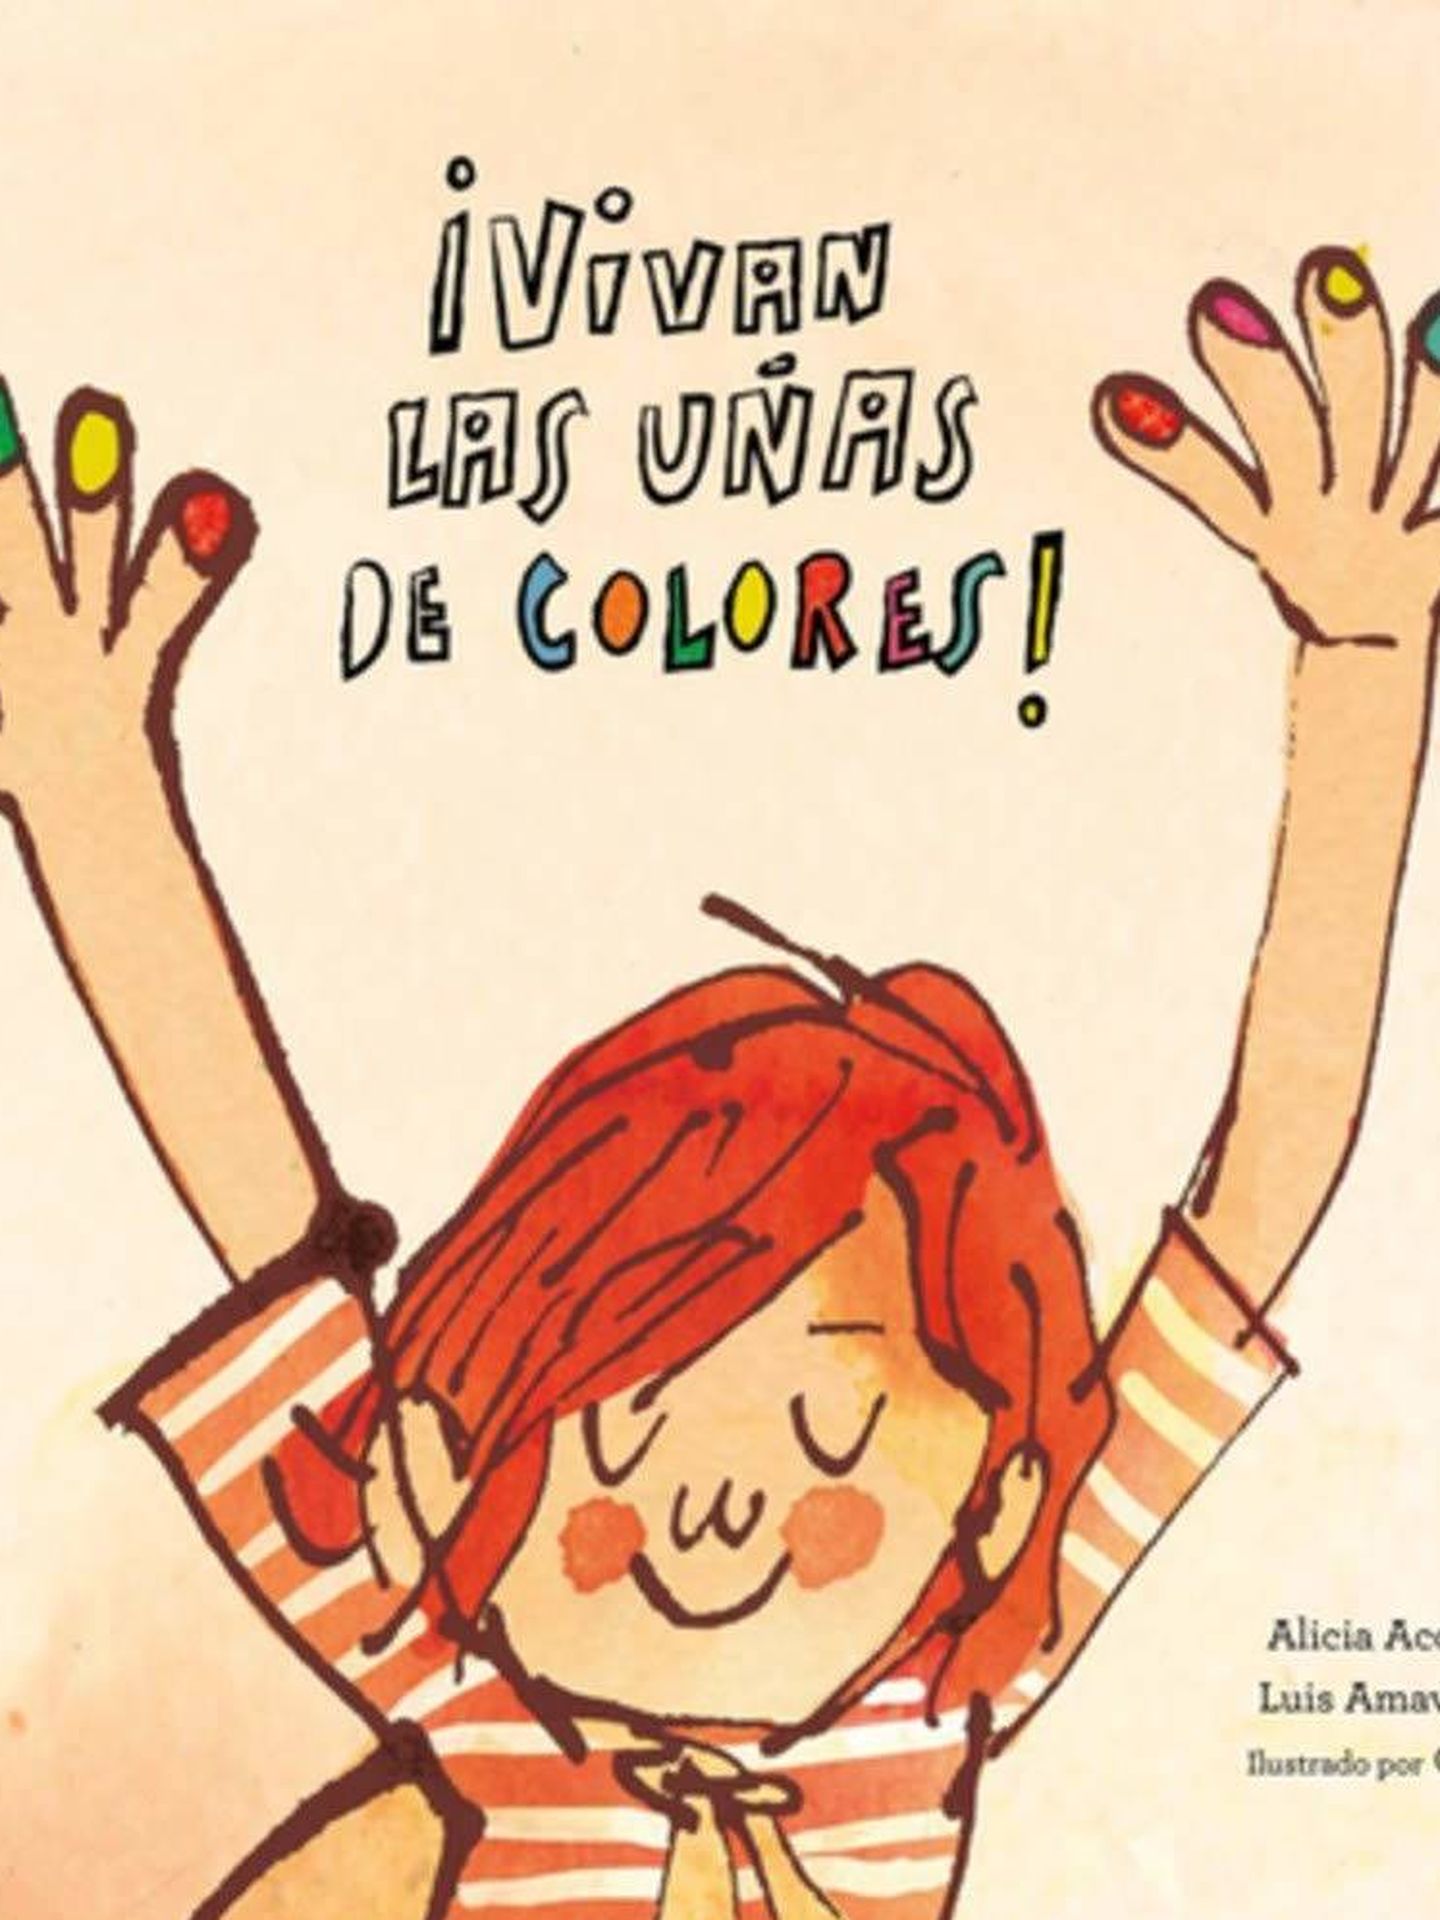 '¡Vivan las uñas de colores!'.